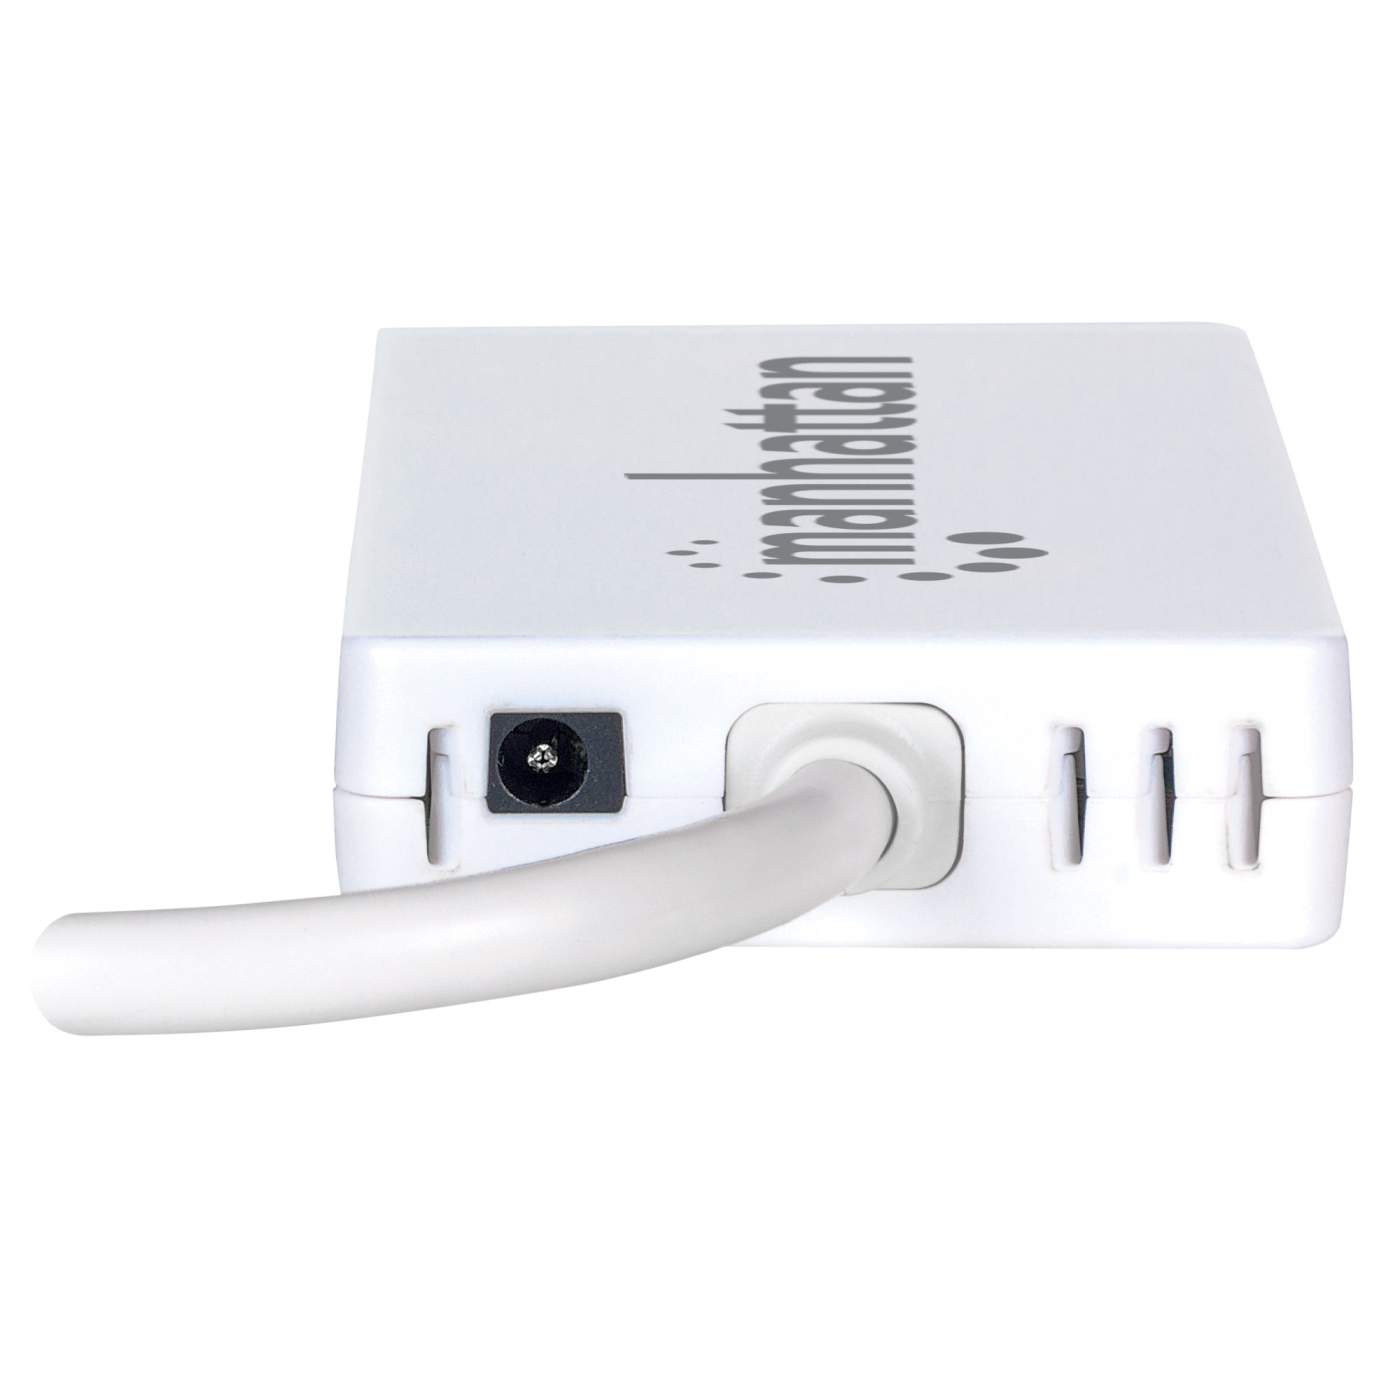 Adaptateur USB 3.0 Ethernet Gigabit pour Surface – Microsoft Store